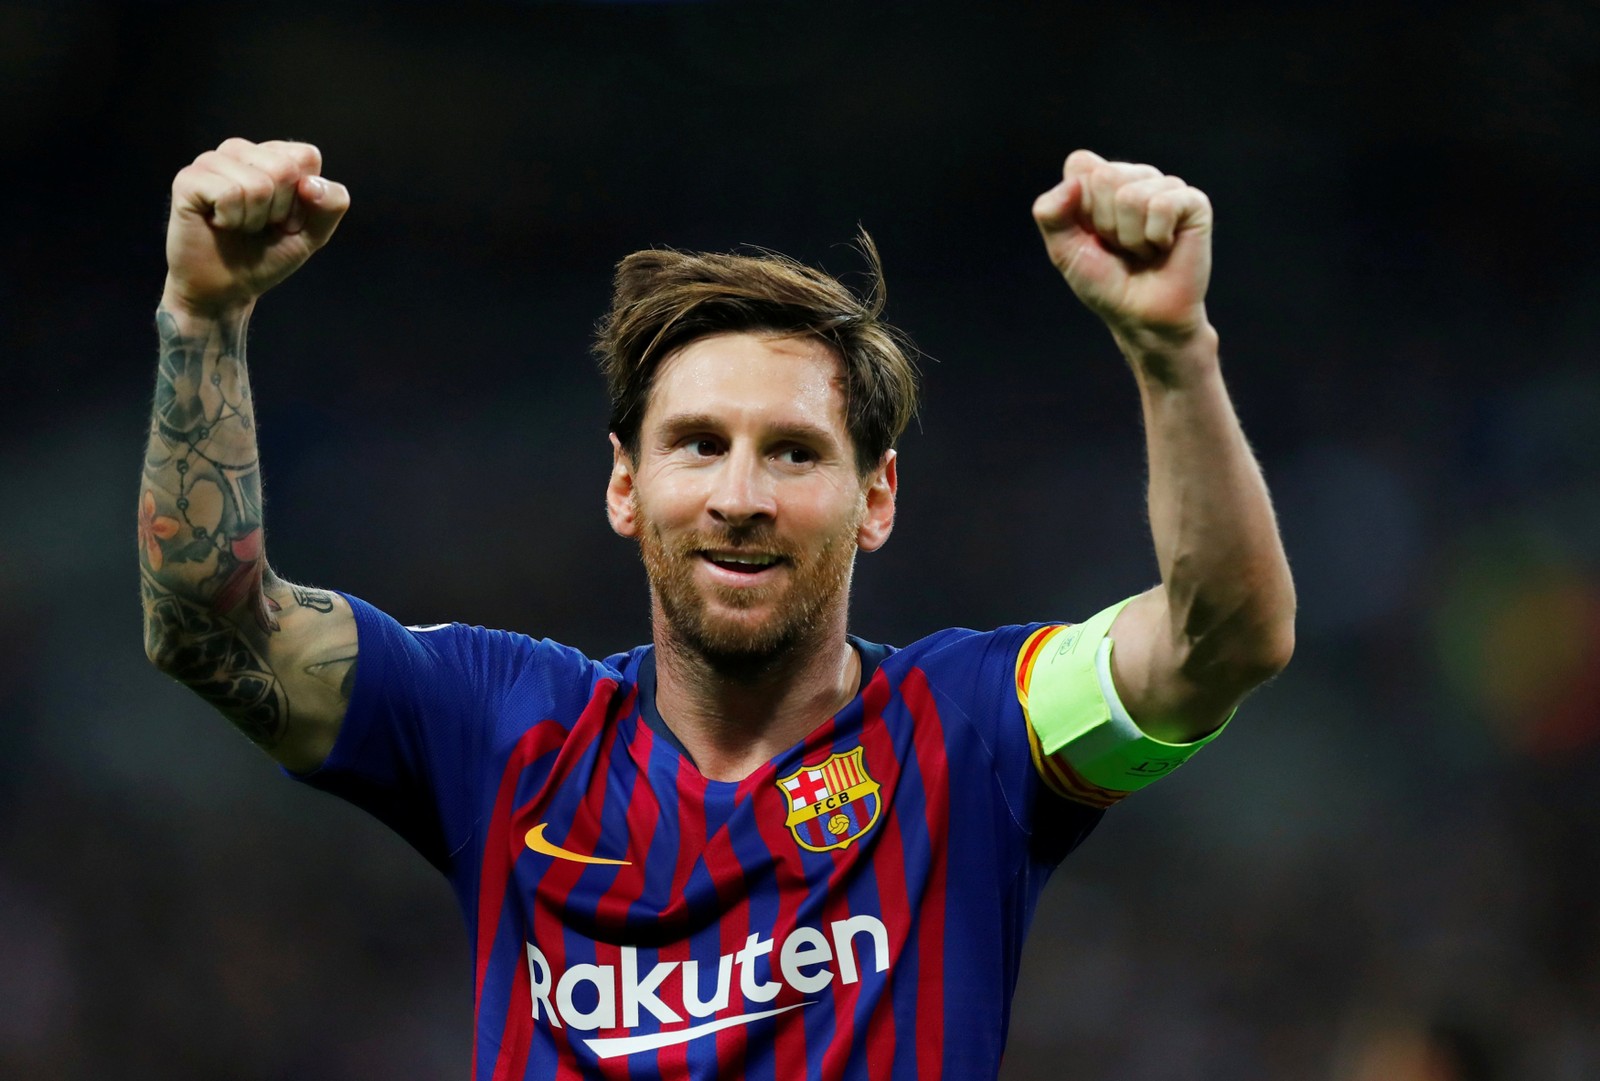 LIONEL MESSI - O argentino Lionel Messi marcou 125 gols, por BarcelonaReuters